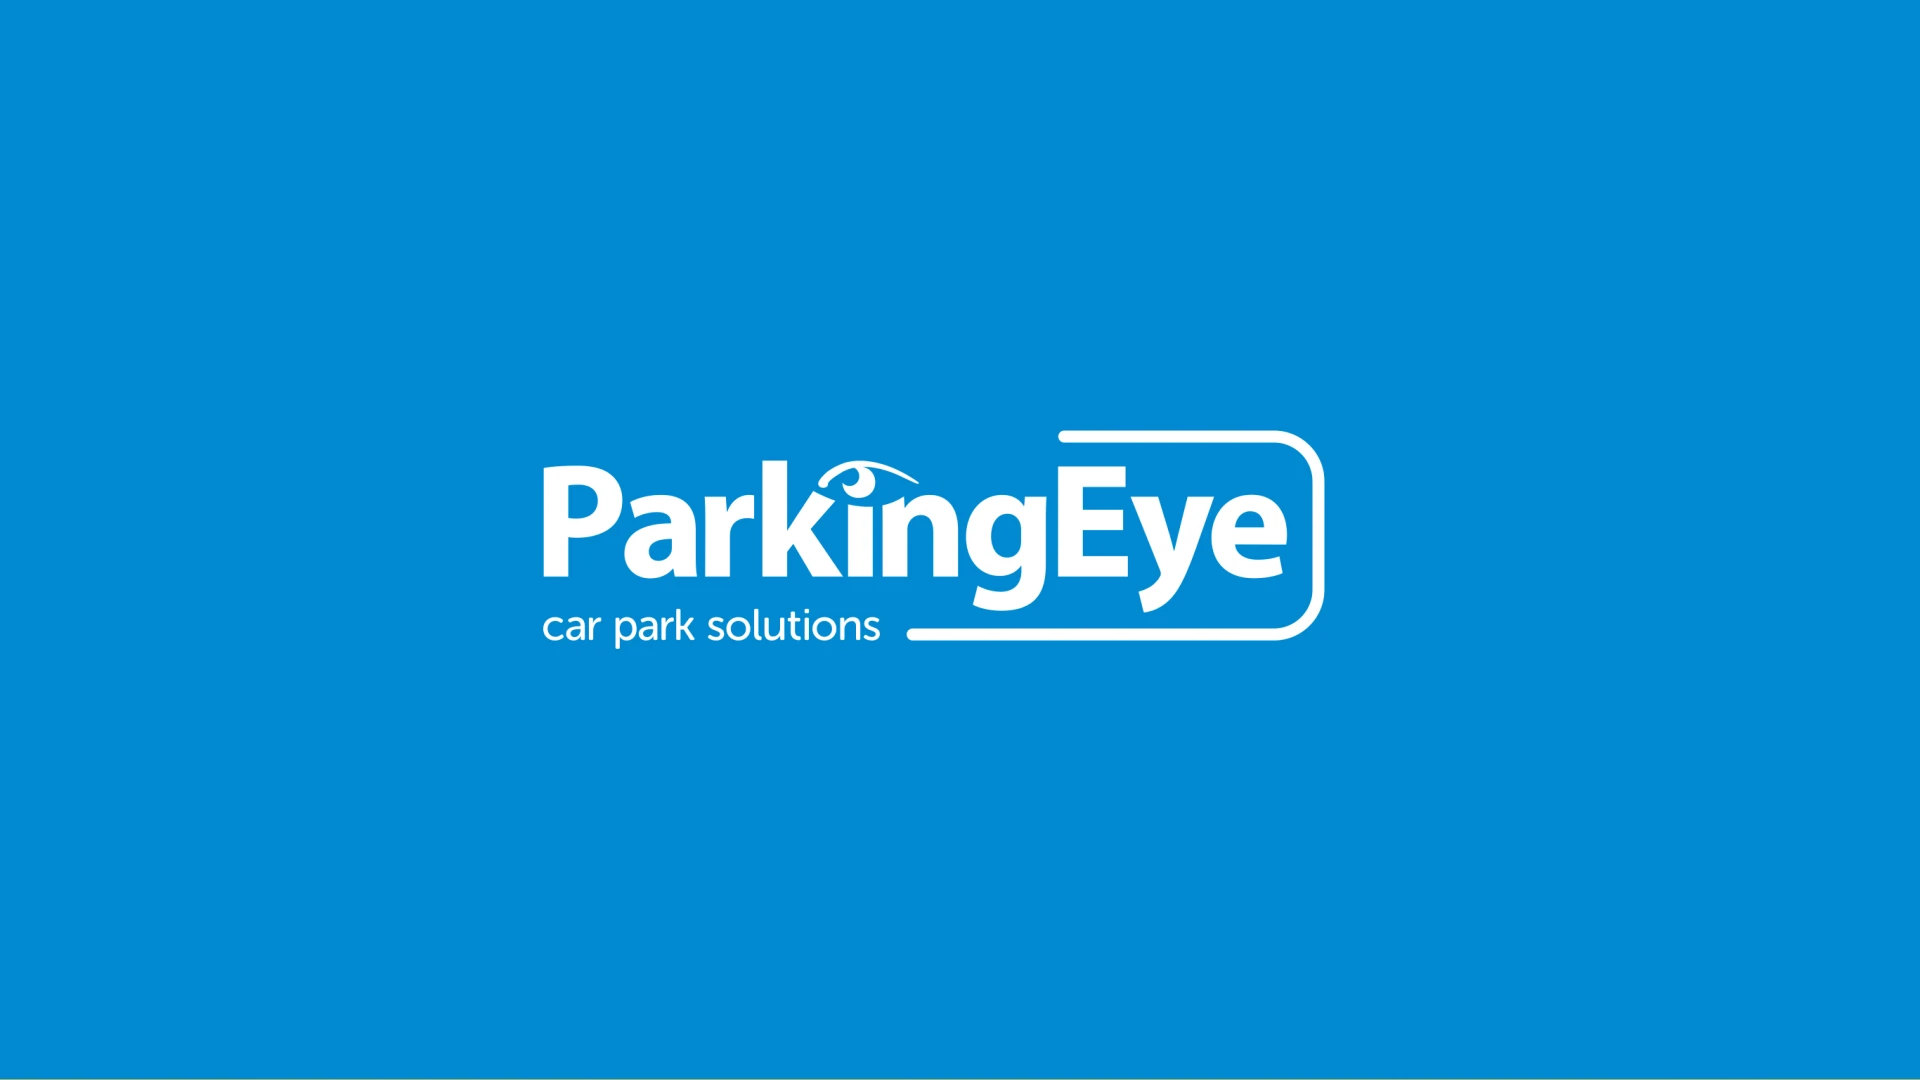 Parking Eye Brand Identity